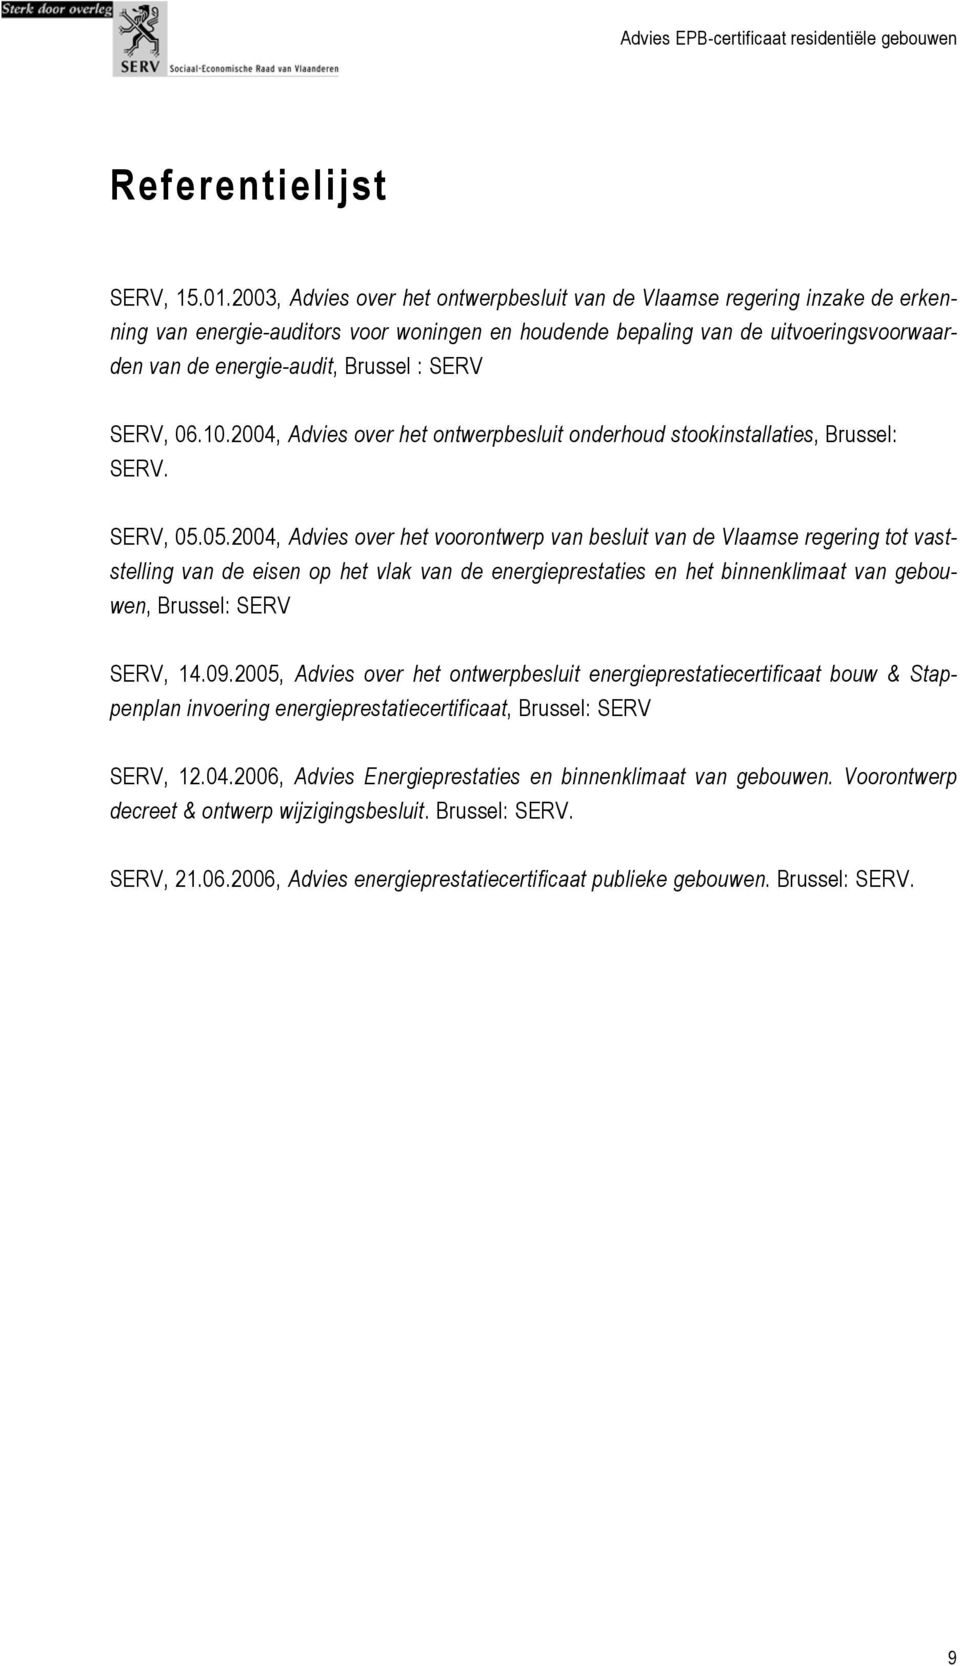 SERV SERV, 06.10.2004, Advies over het ontwerpbesluit onderhoud stookinstallaties, Brussel: SERV. SERV, 05.